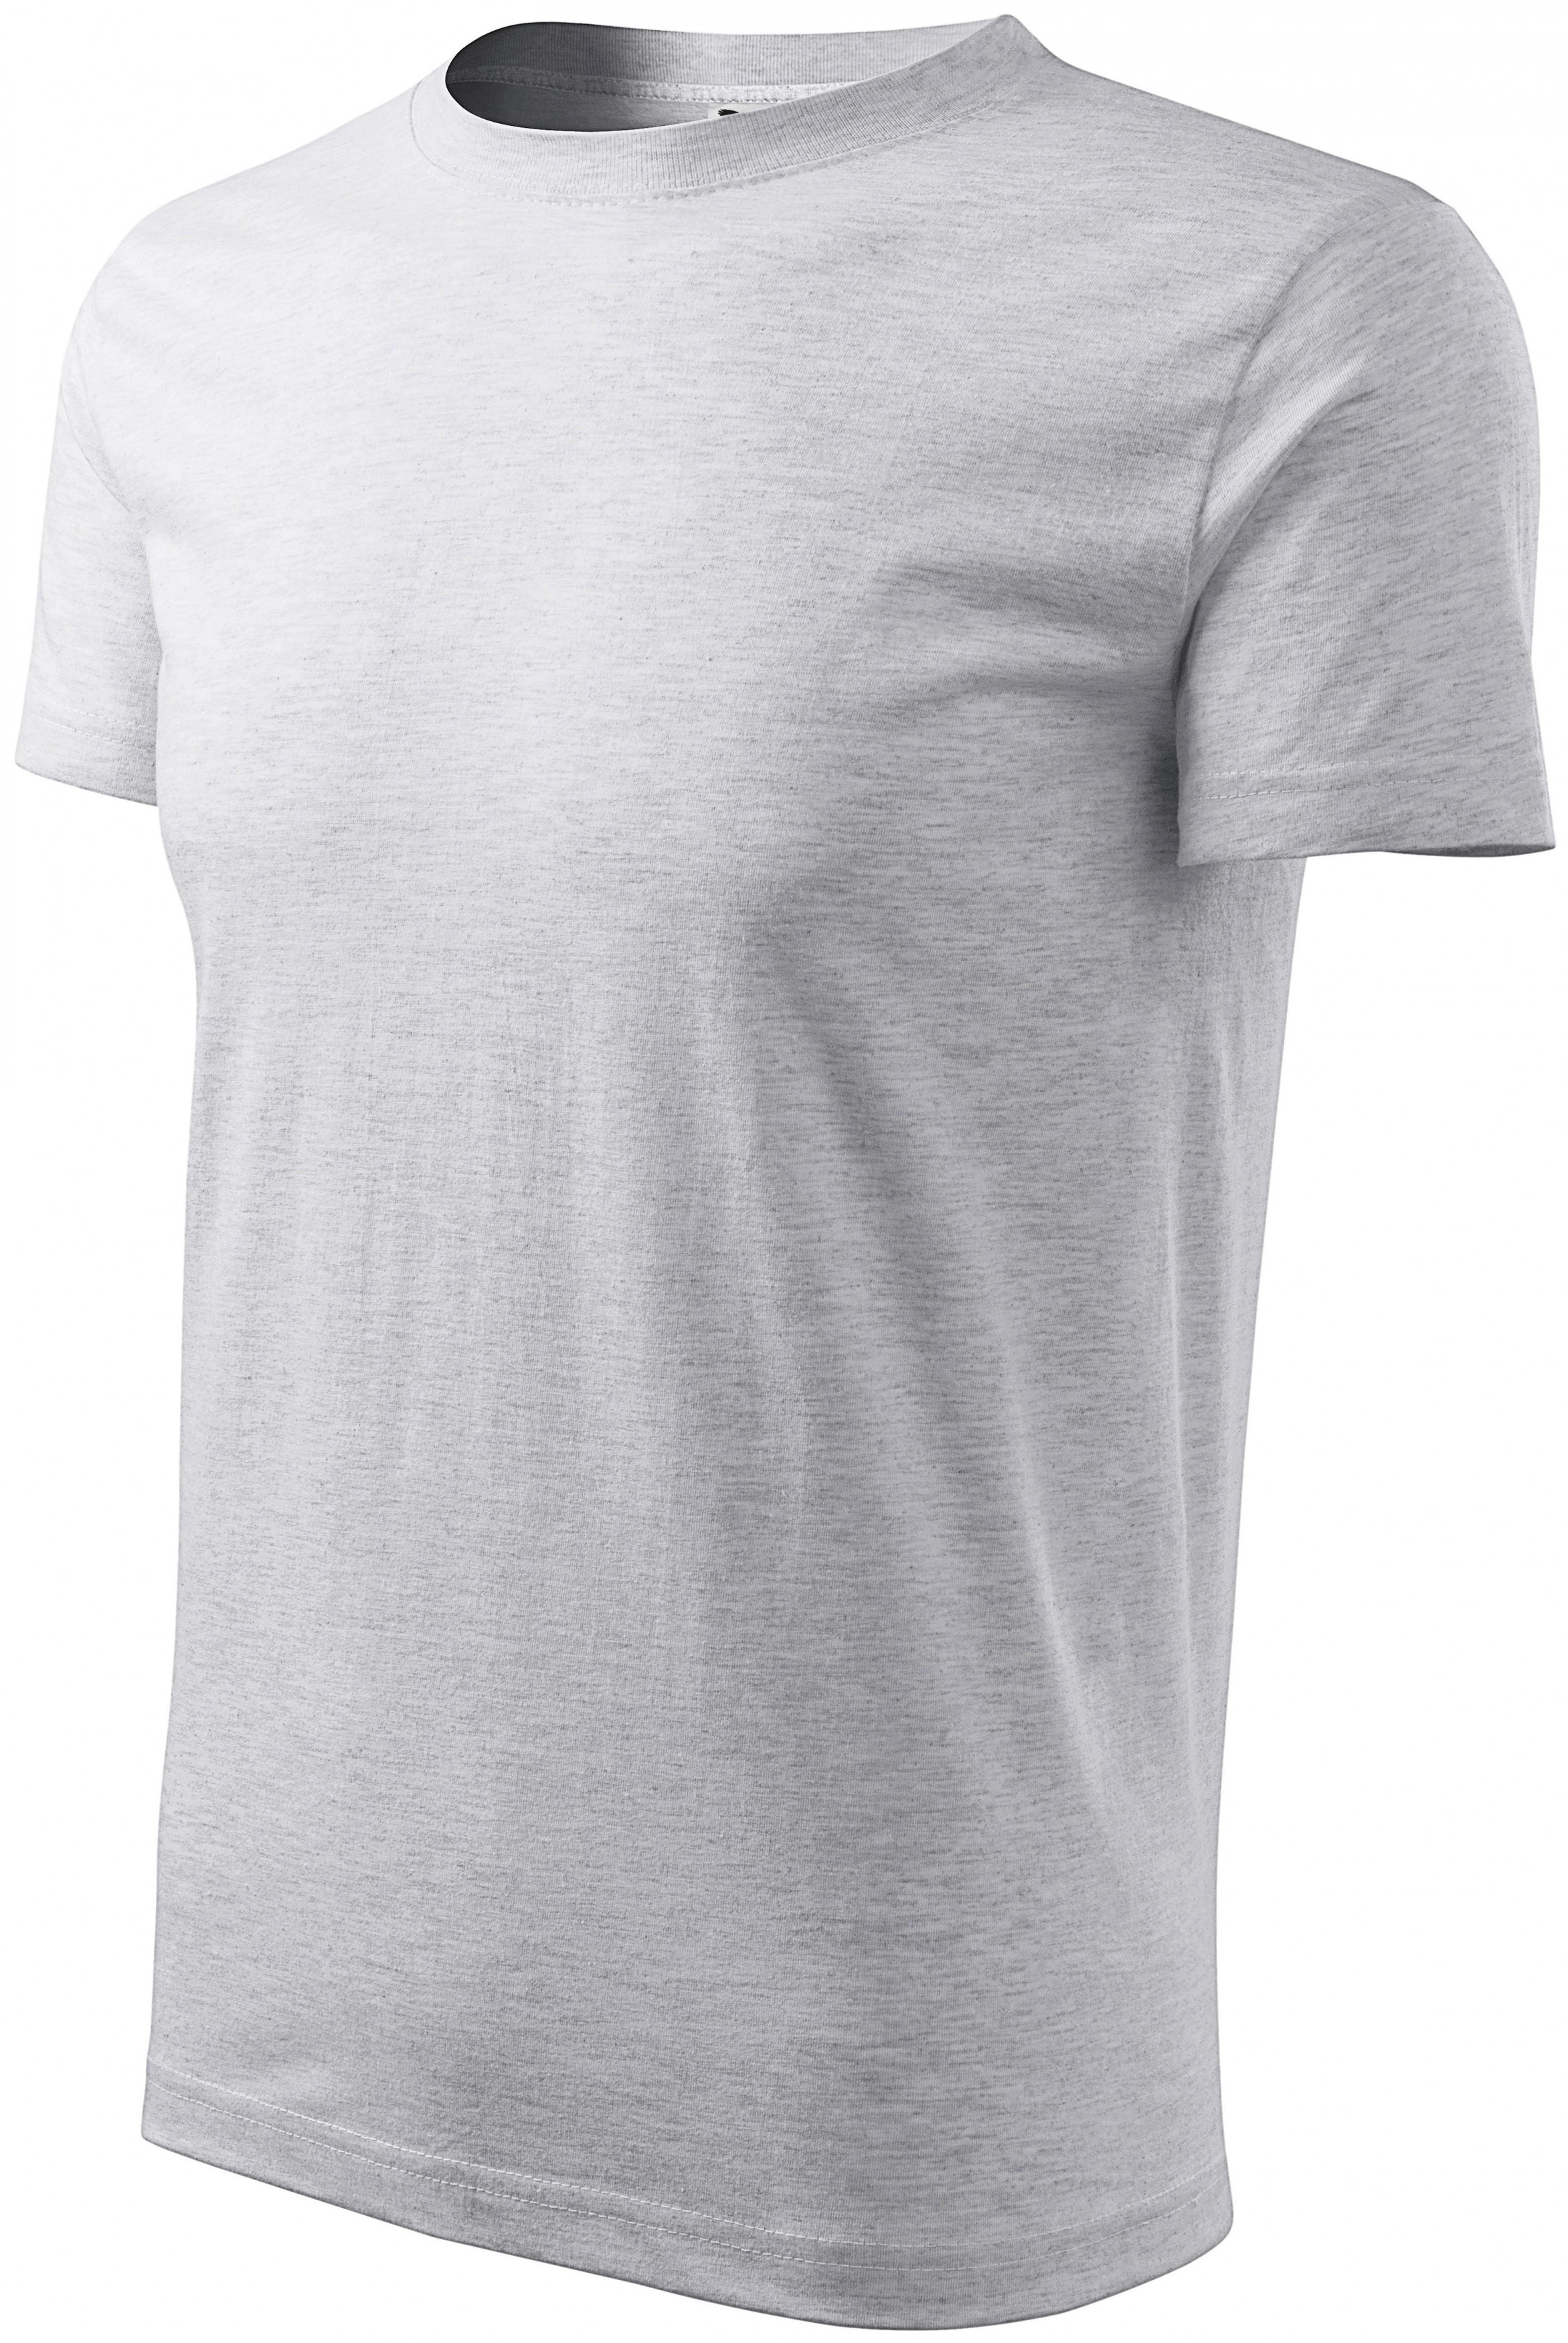 Pánske tričko klasické, svetlosivý melír, 3XL